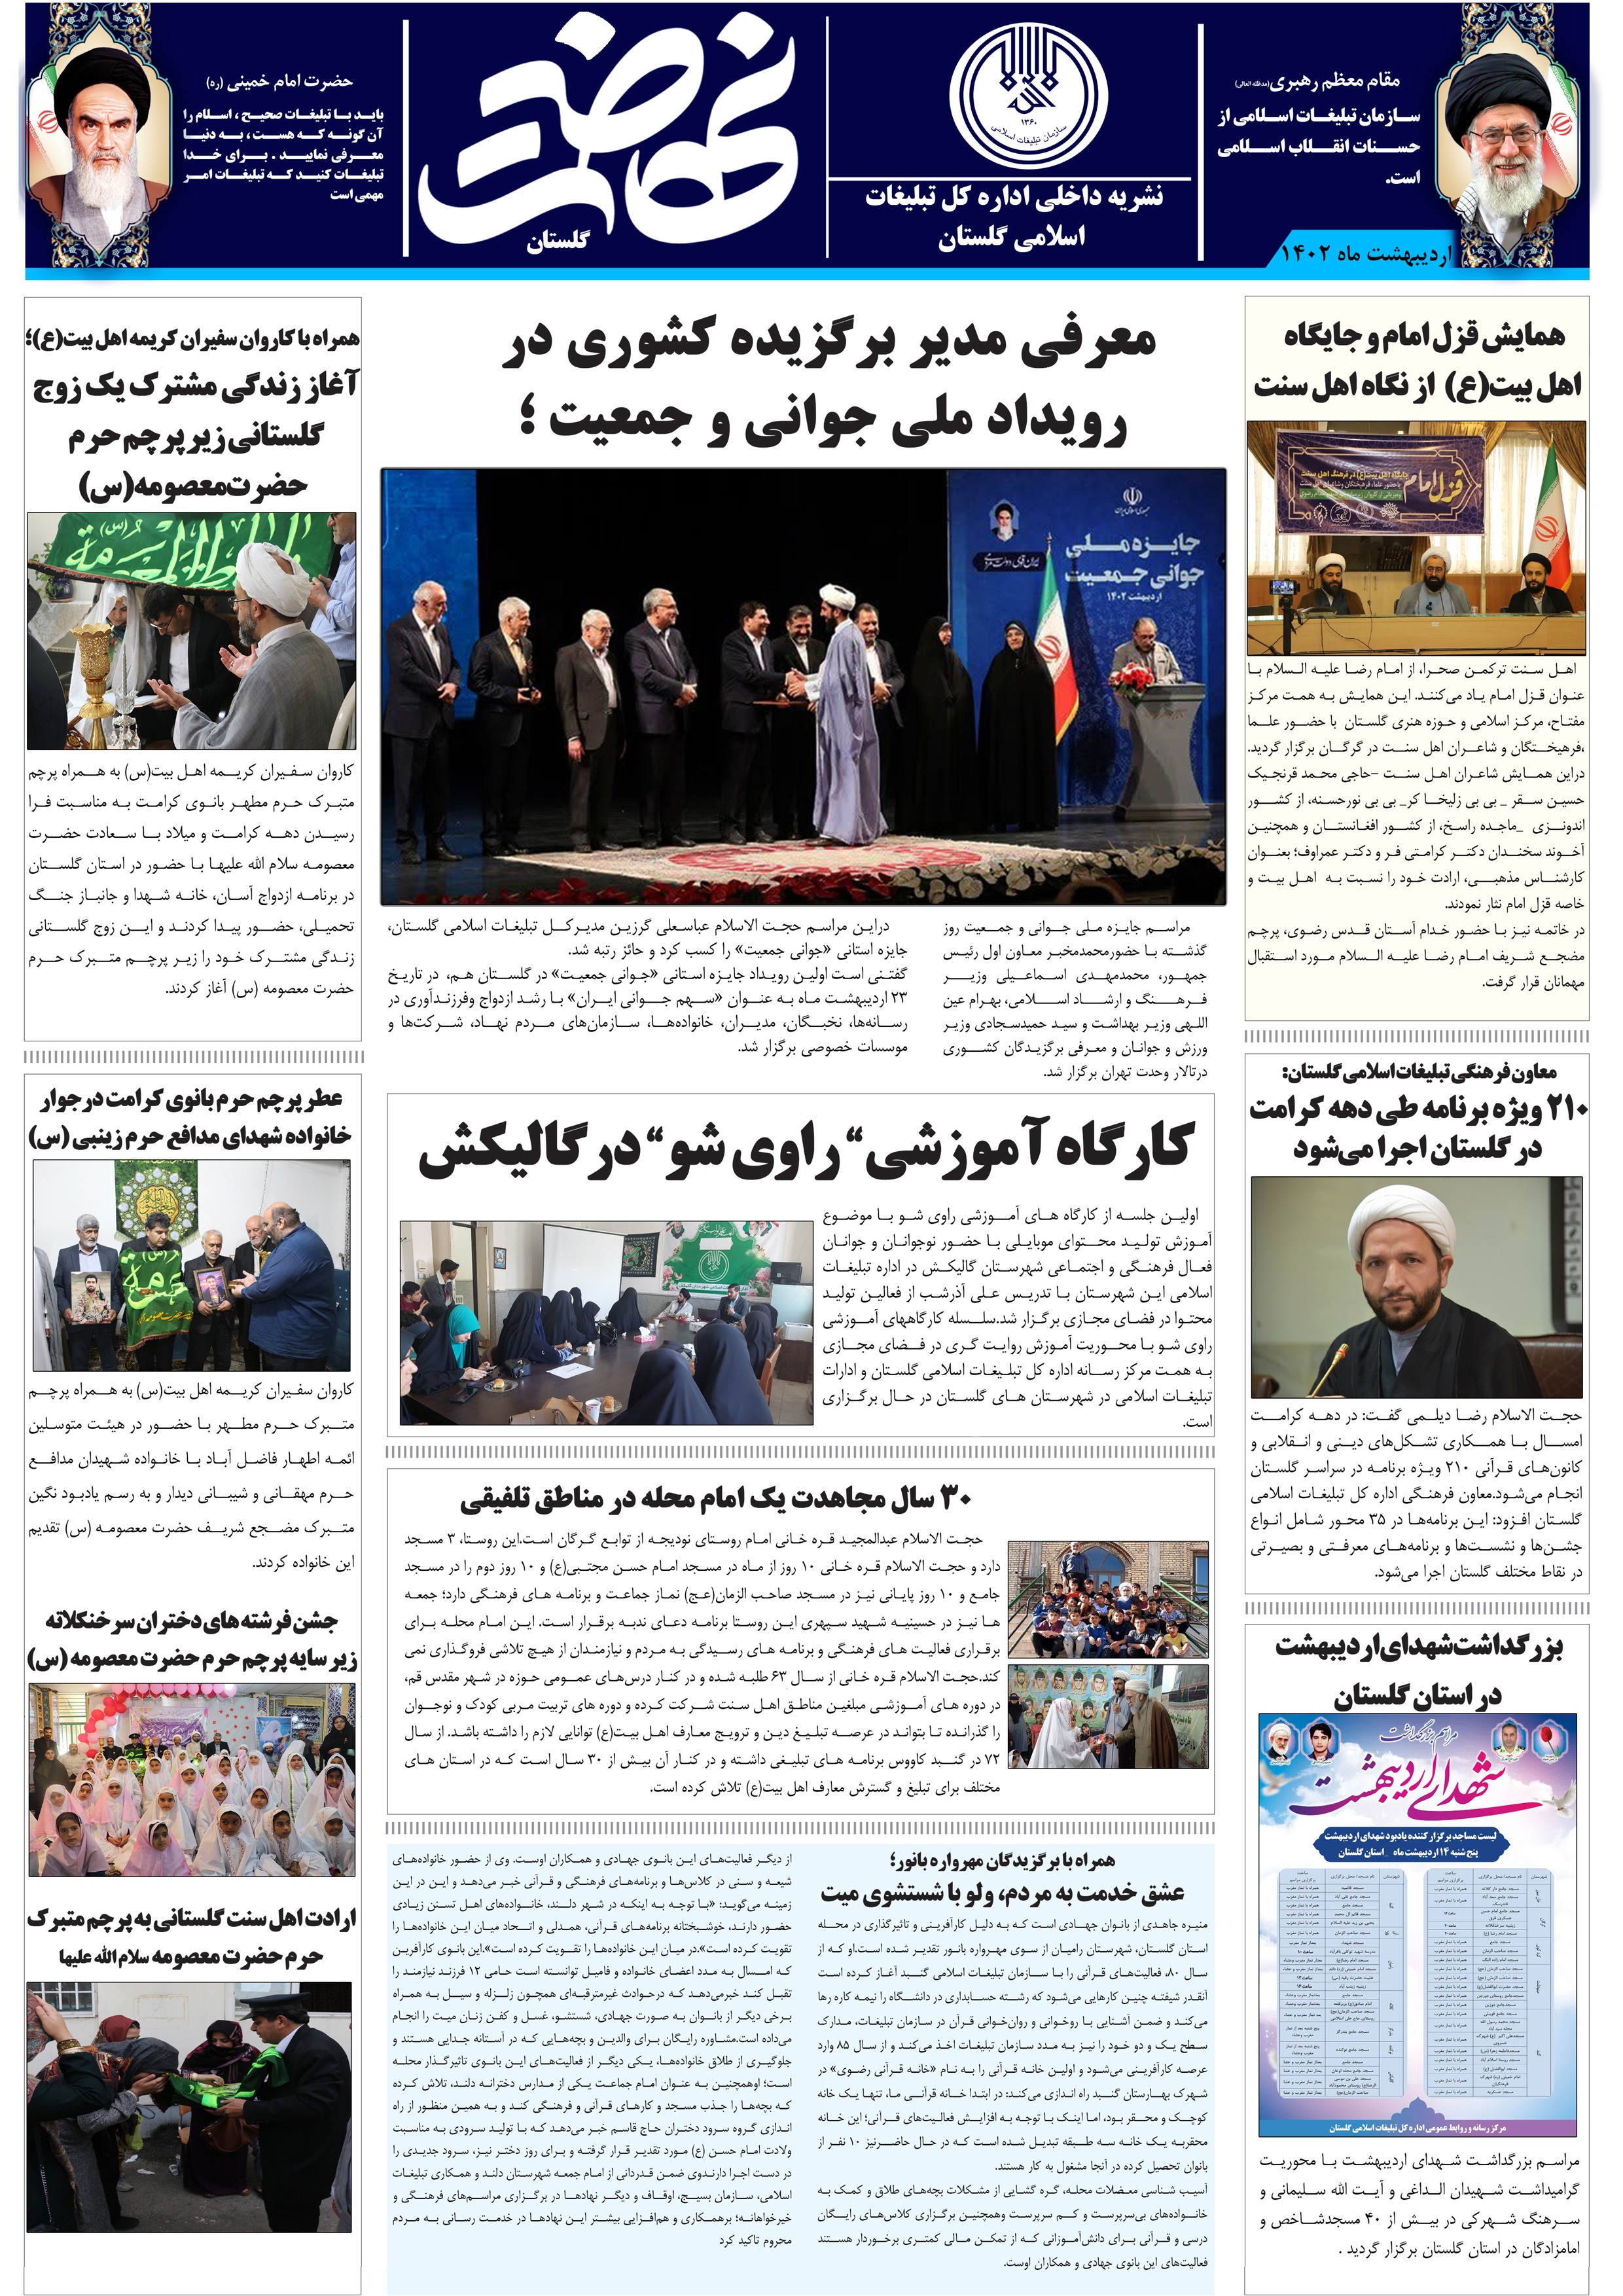 نشریه نهضت اسلامی گلستان/دانلود